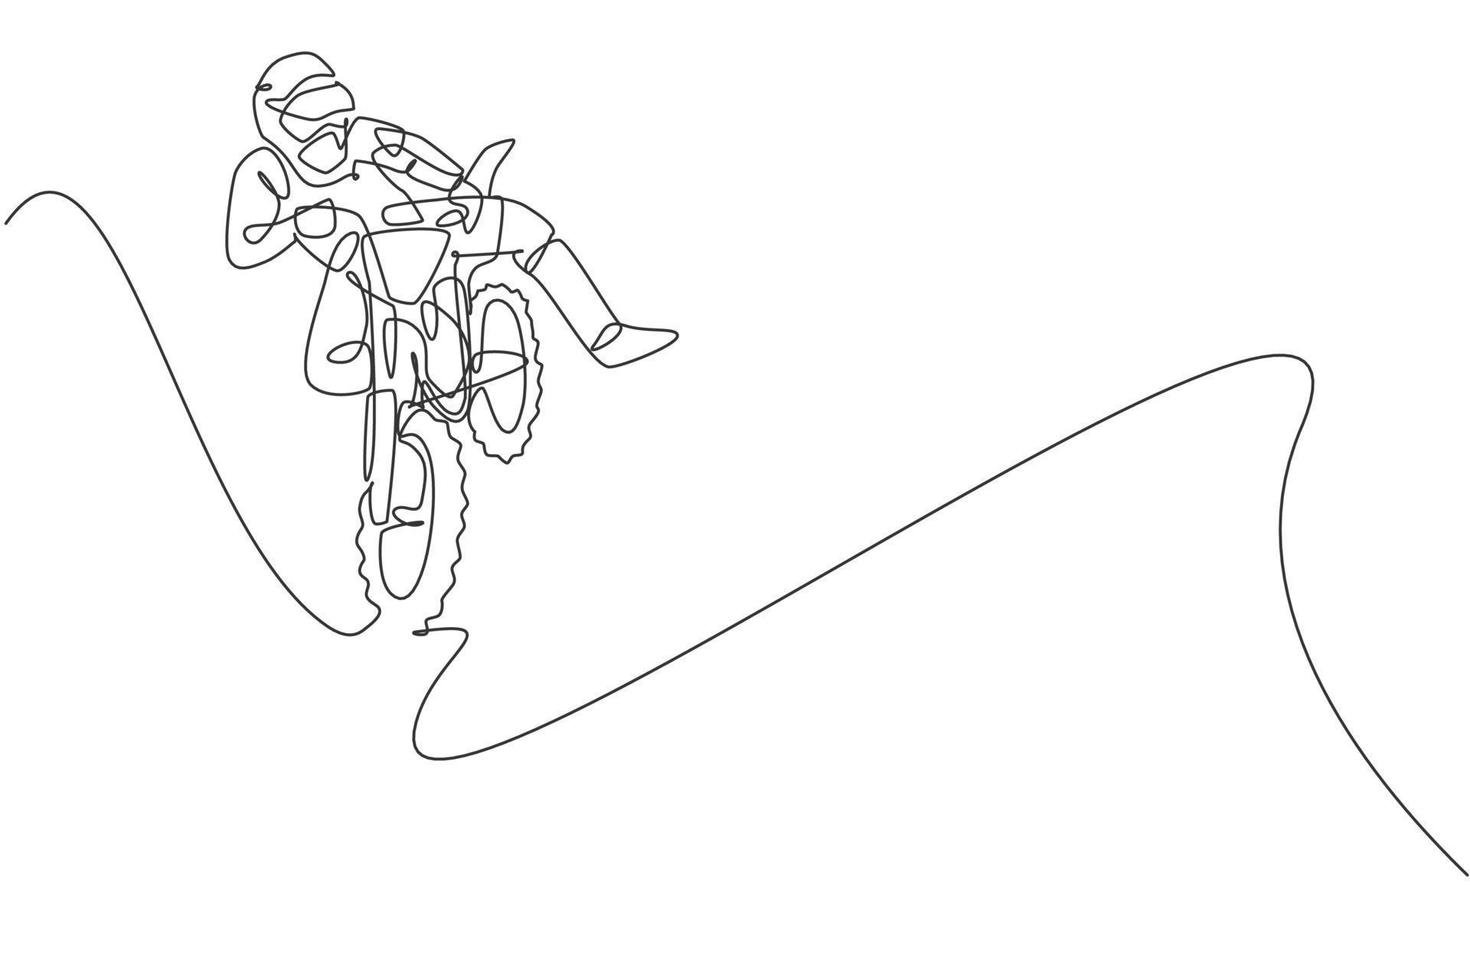 en kontinuerlig linjeteckning av ung motocrossförare som hoppar flugakrobatik på racerbanan. extrem sport koncept. dynamisk enda linje rita design vektorillustration för motocross konkurrens affisch vektor